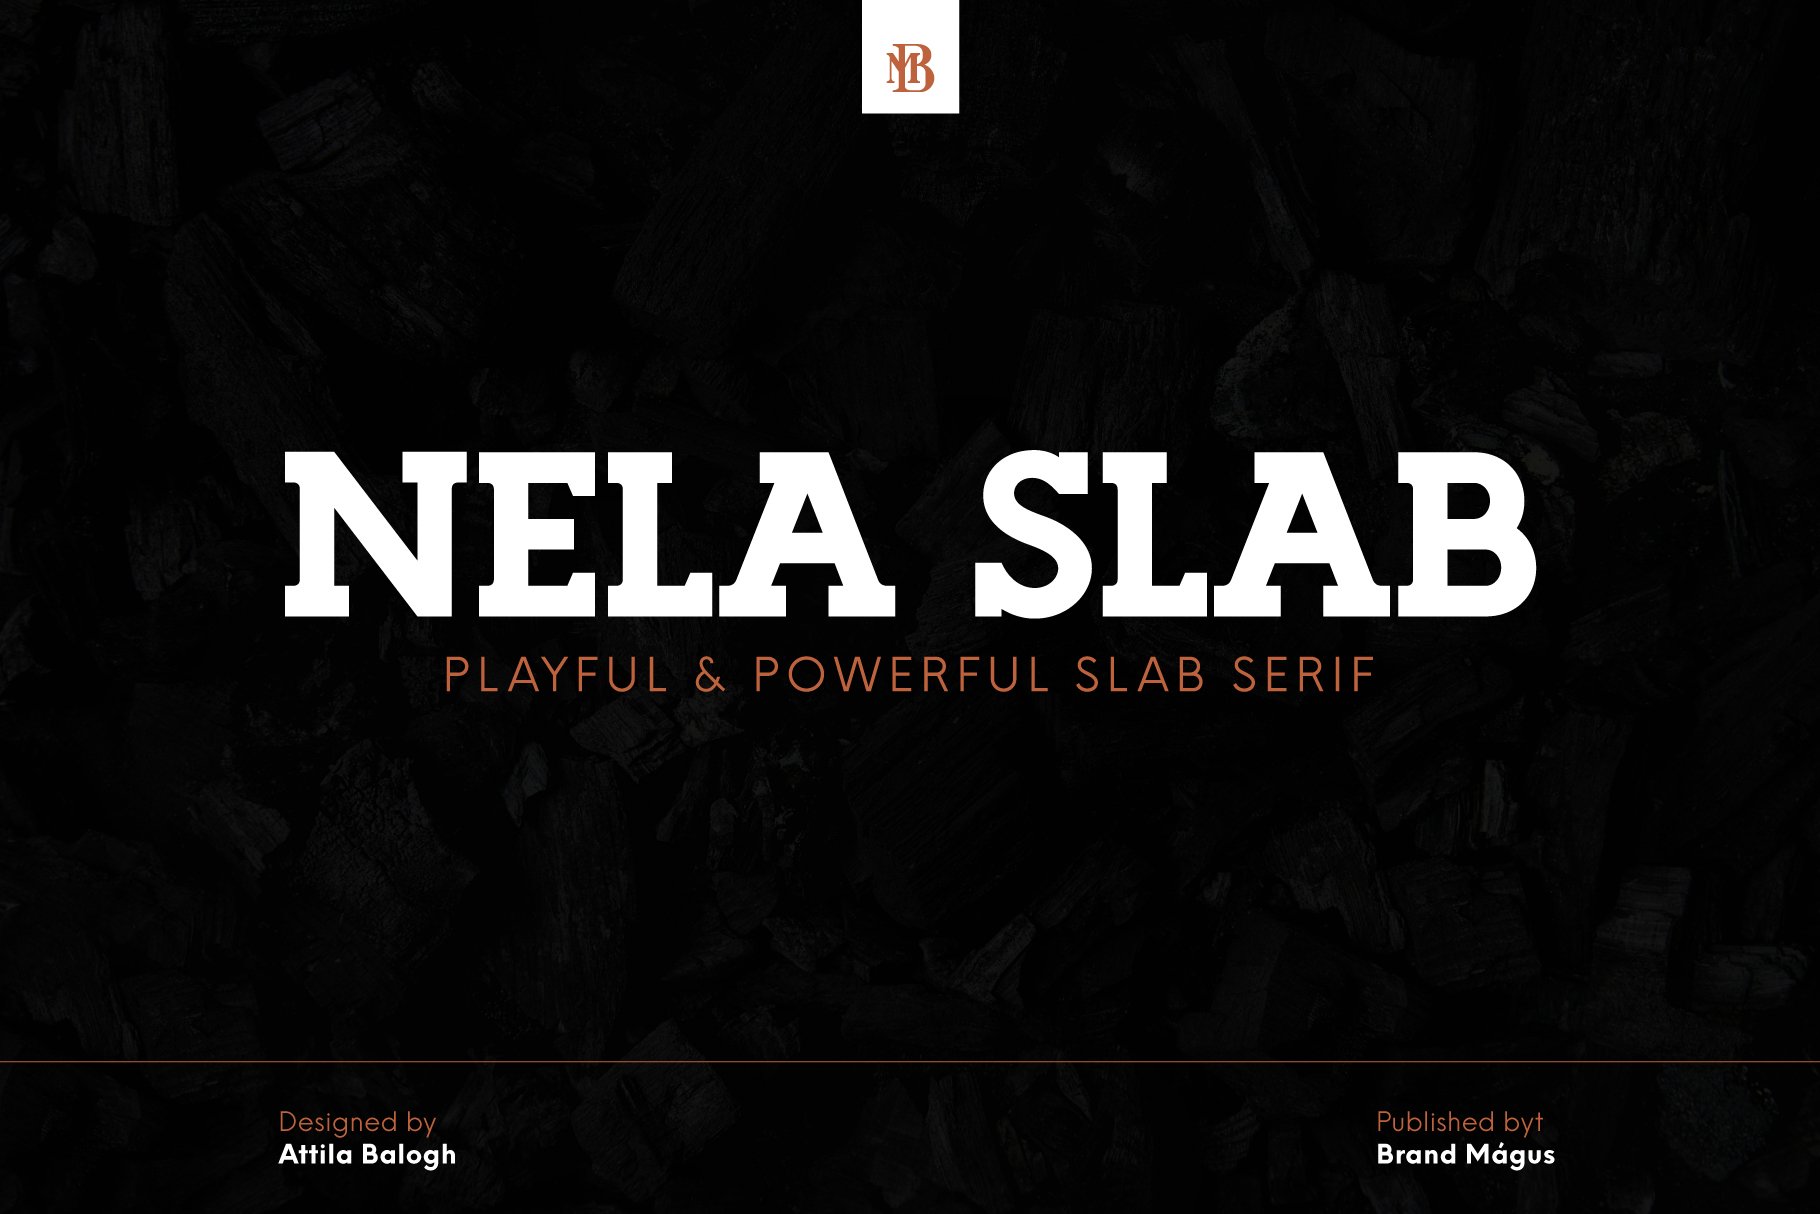 Nela Slab - Playful & Powerful Slab cover image.